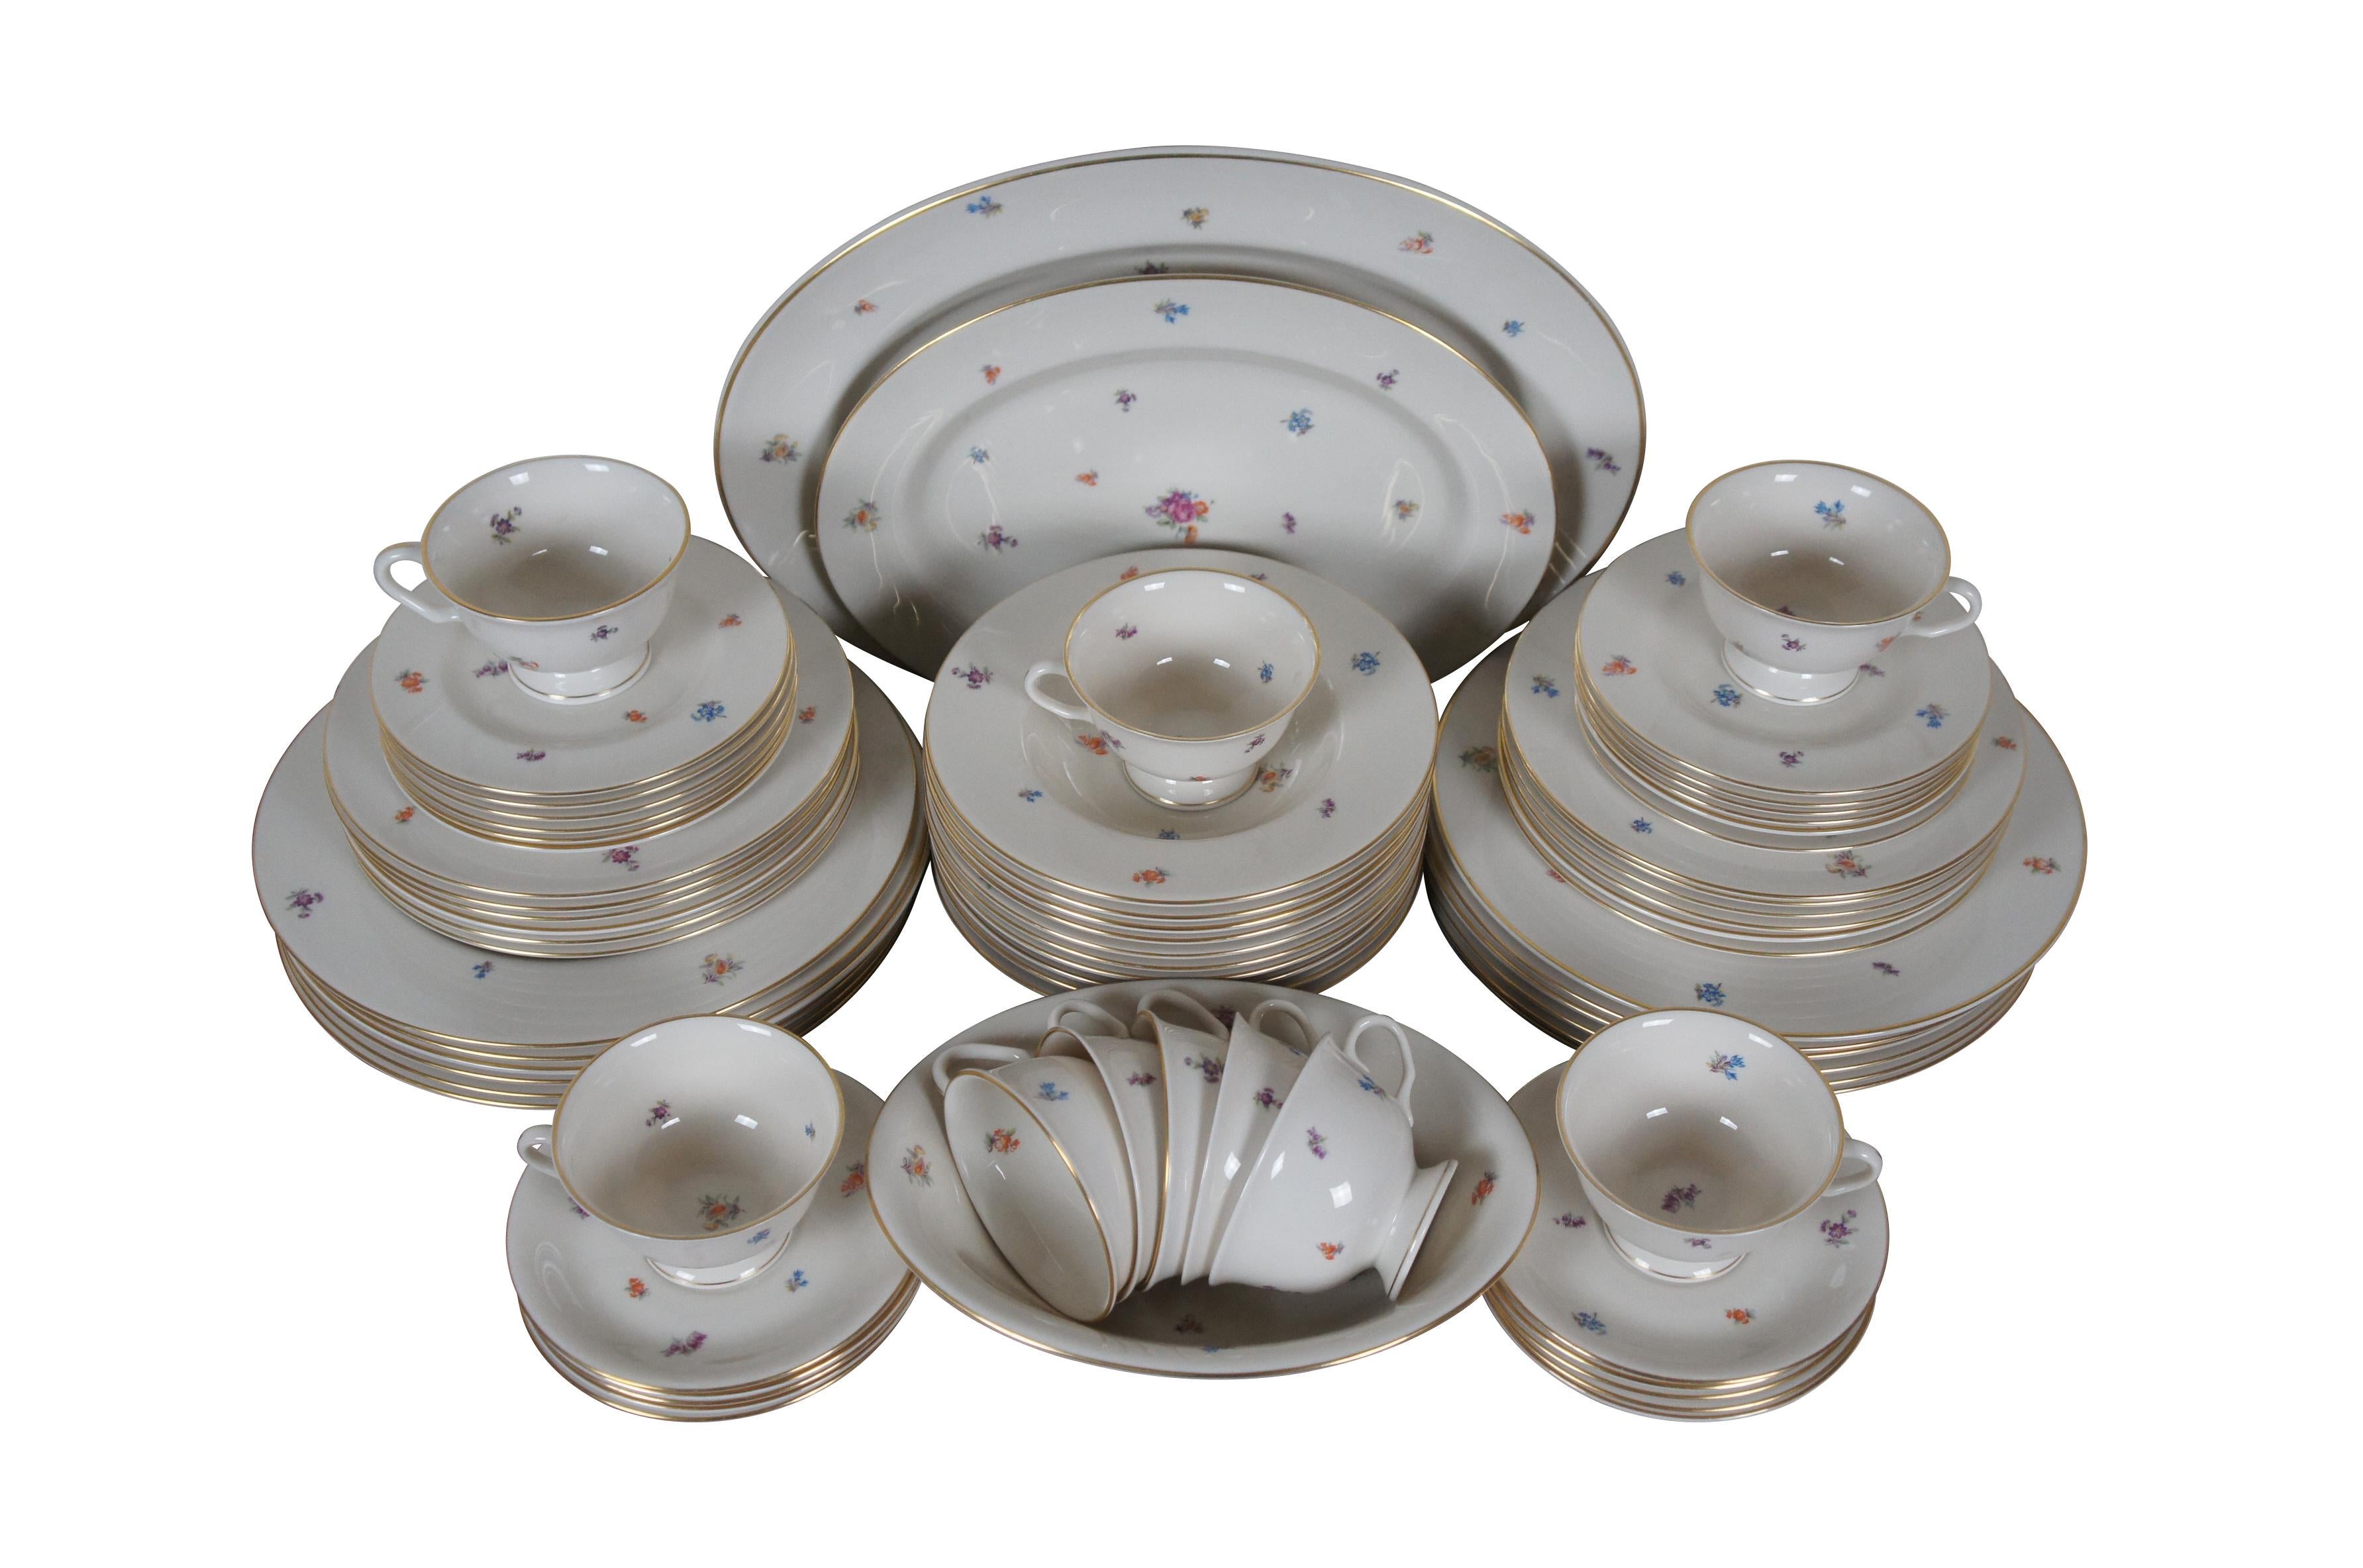 Service vintage de 69 pièces de vaisselle en porcelaine de Pickard dans le motif Floral Chintz, présentant un motif floral multicolore imprimé et dispersé et un bord doré. Service pour 10 personnes. L'ensemble comprend : Grand plat ovale, petit plat